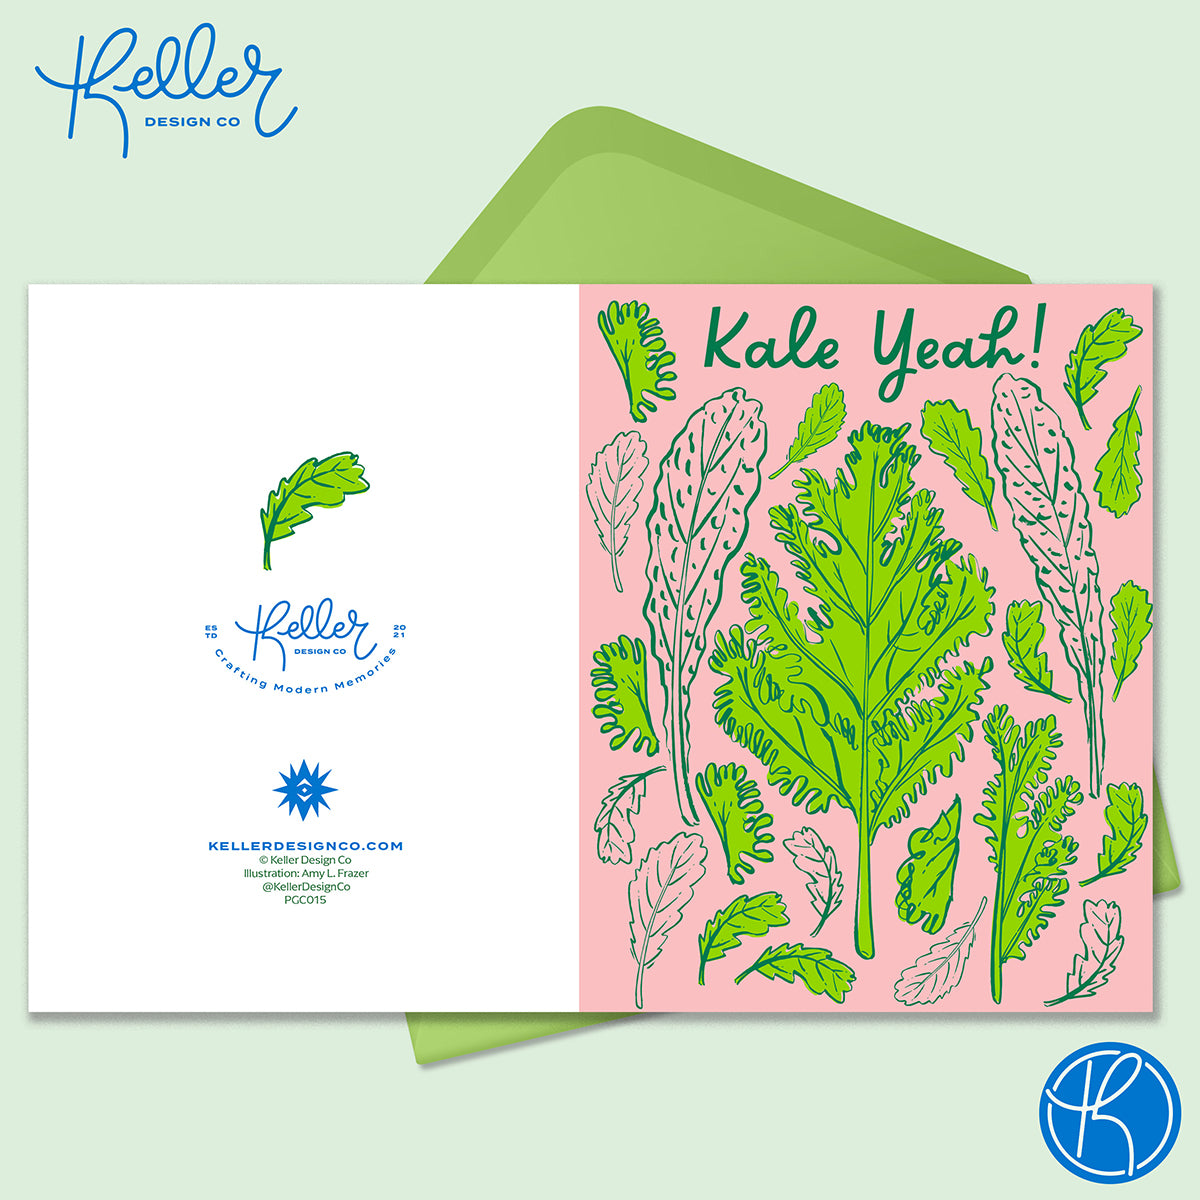 Kale Yeah! Greeting Card